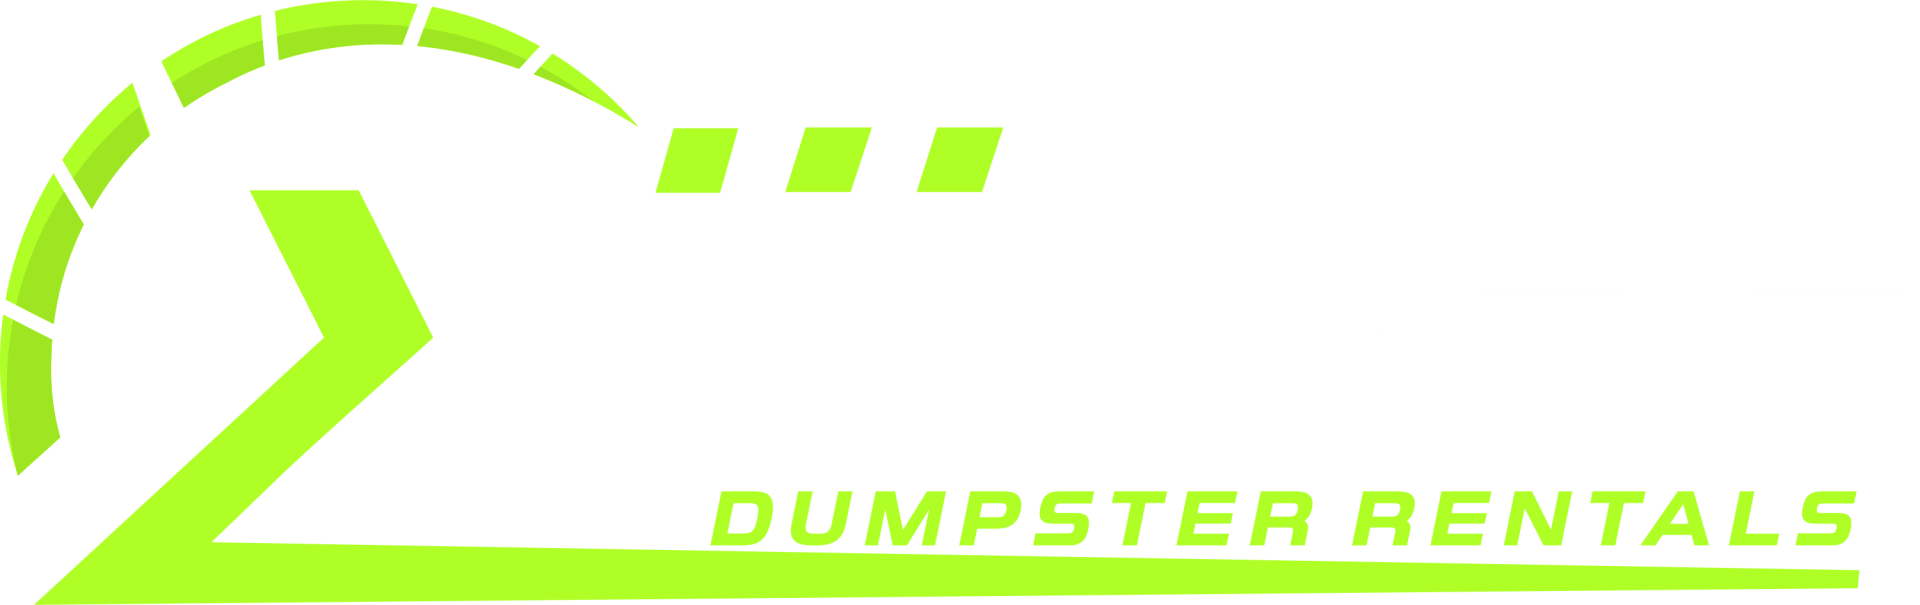 Xpress Dumpster Rentals Logo